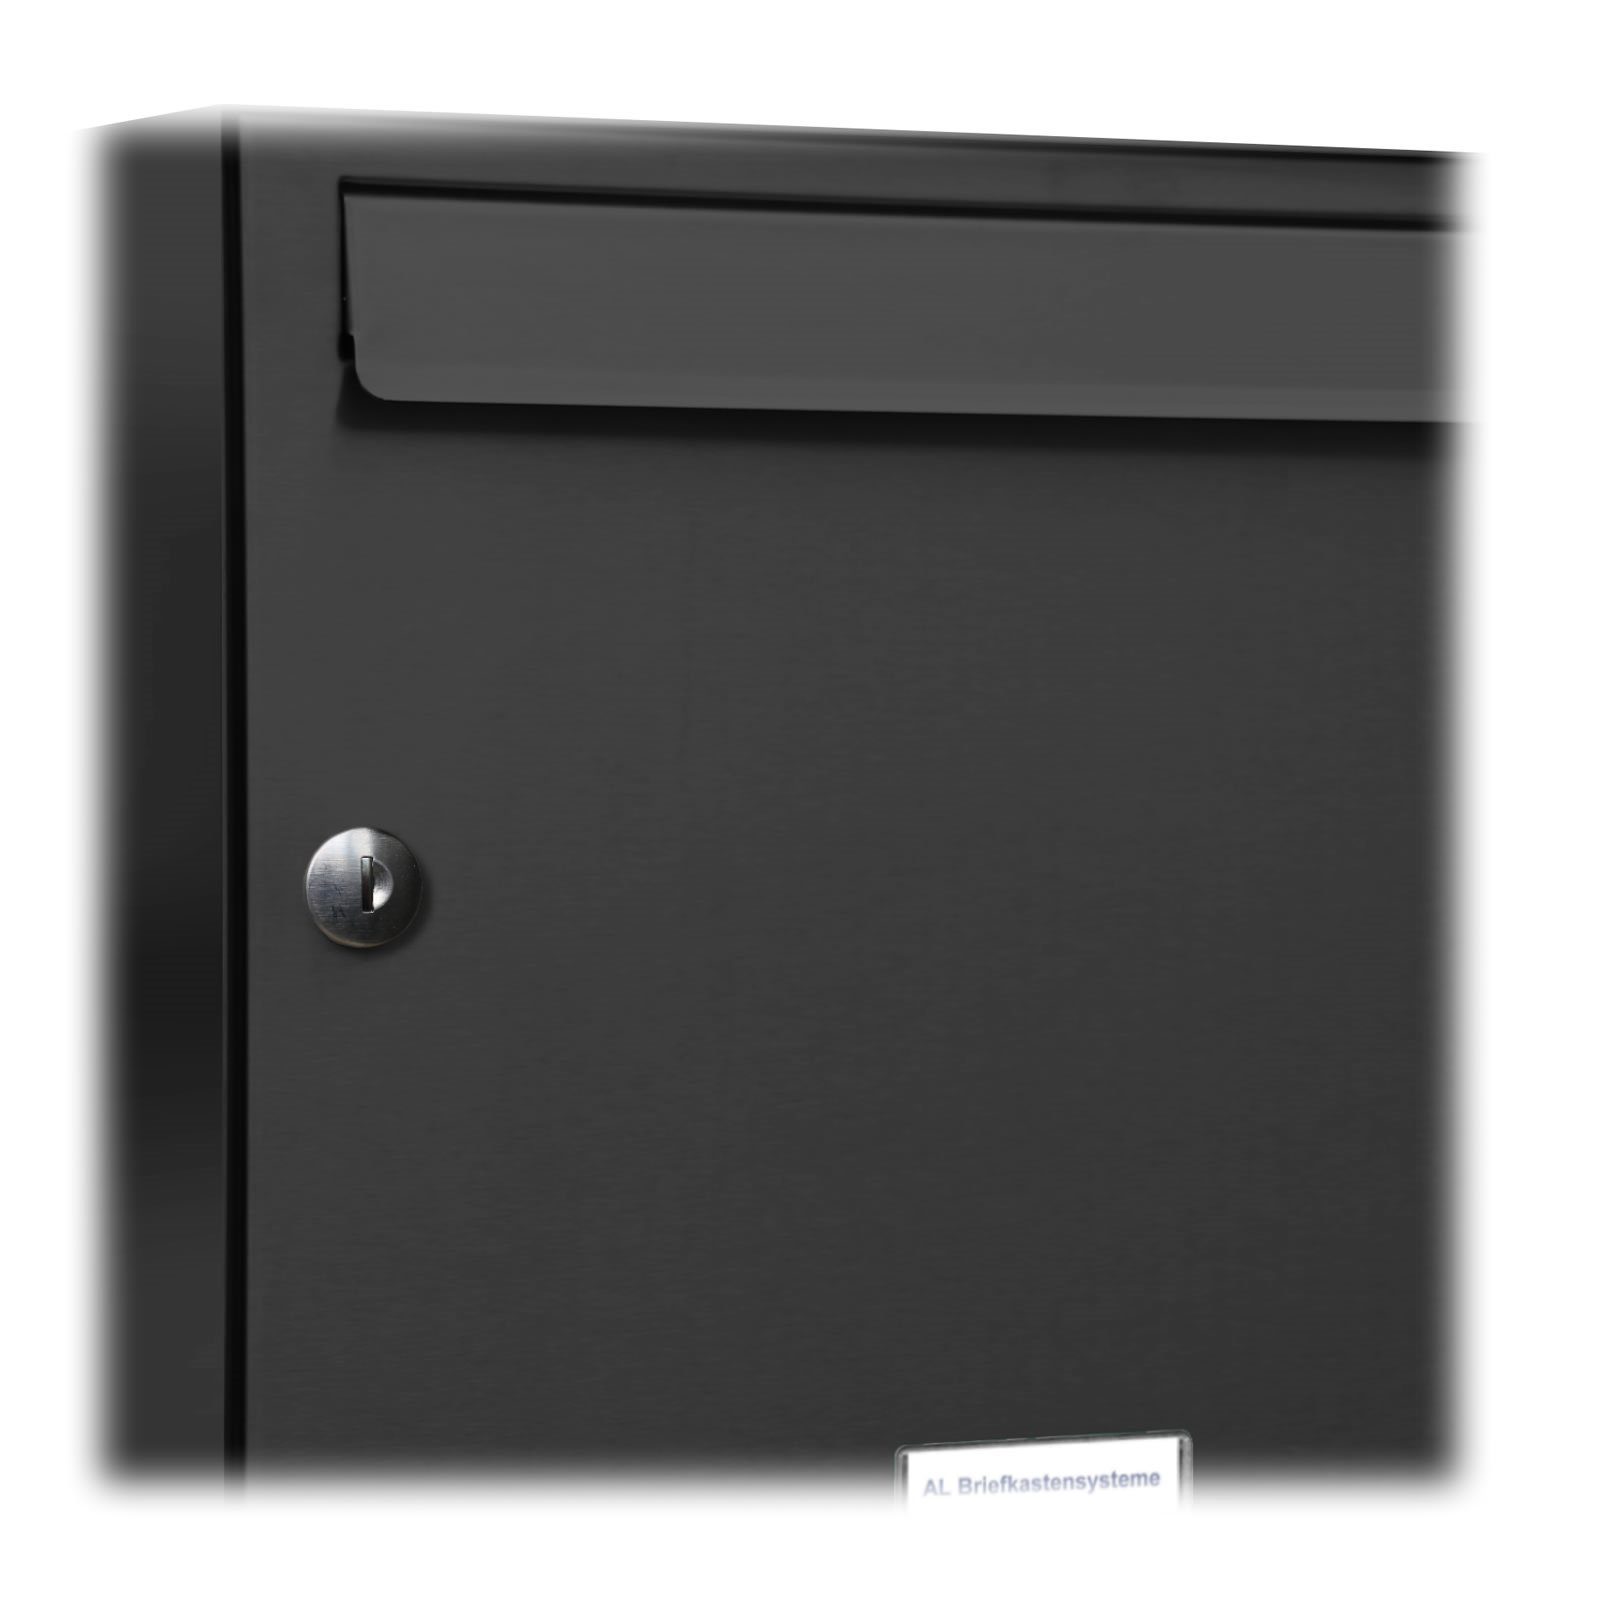 1er Briefkasten RAL Premium AL Farbe Wand für S 7016 Außen Wandbriefkasten Briefkastensysteme